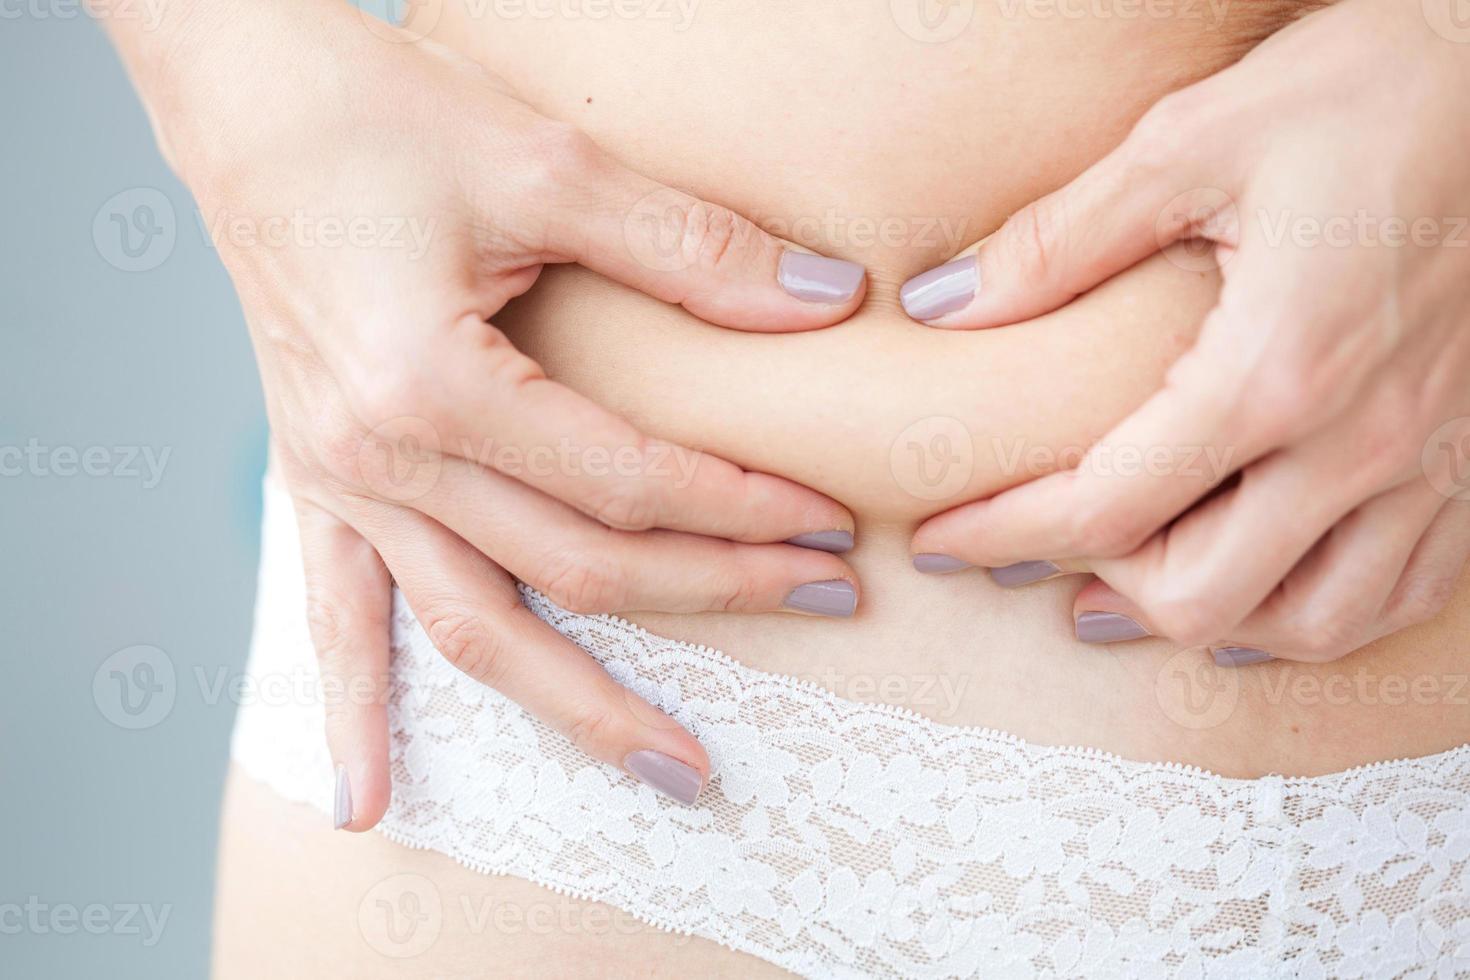 localisé graisse dans femme abdomen photo